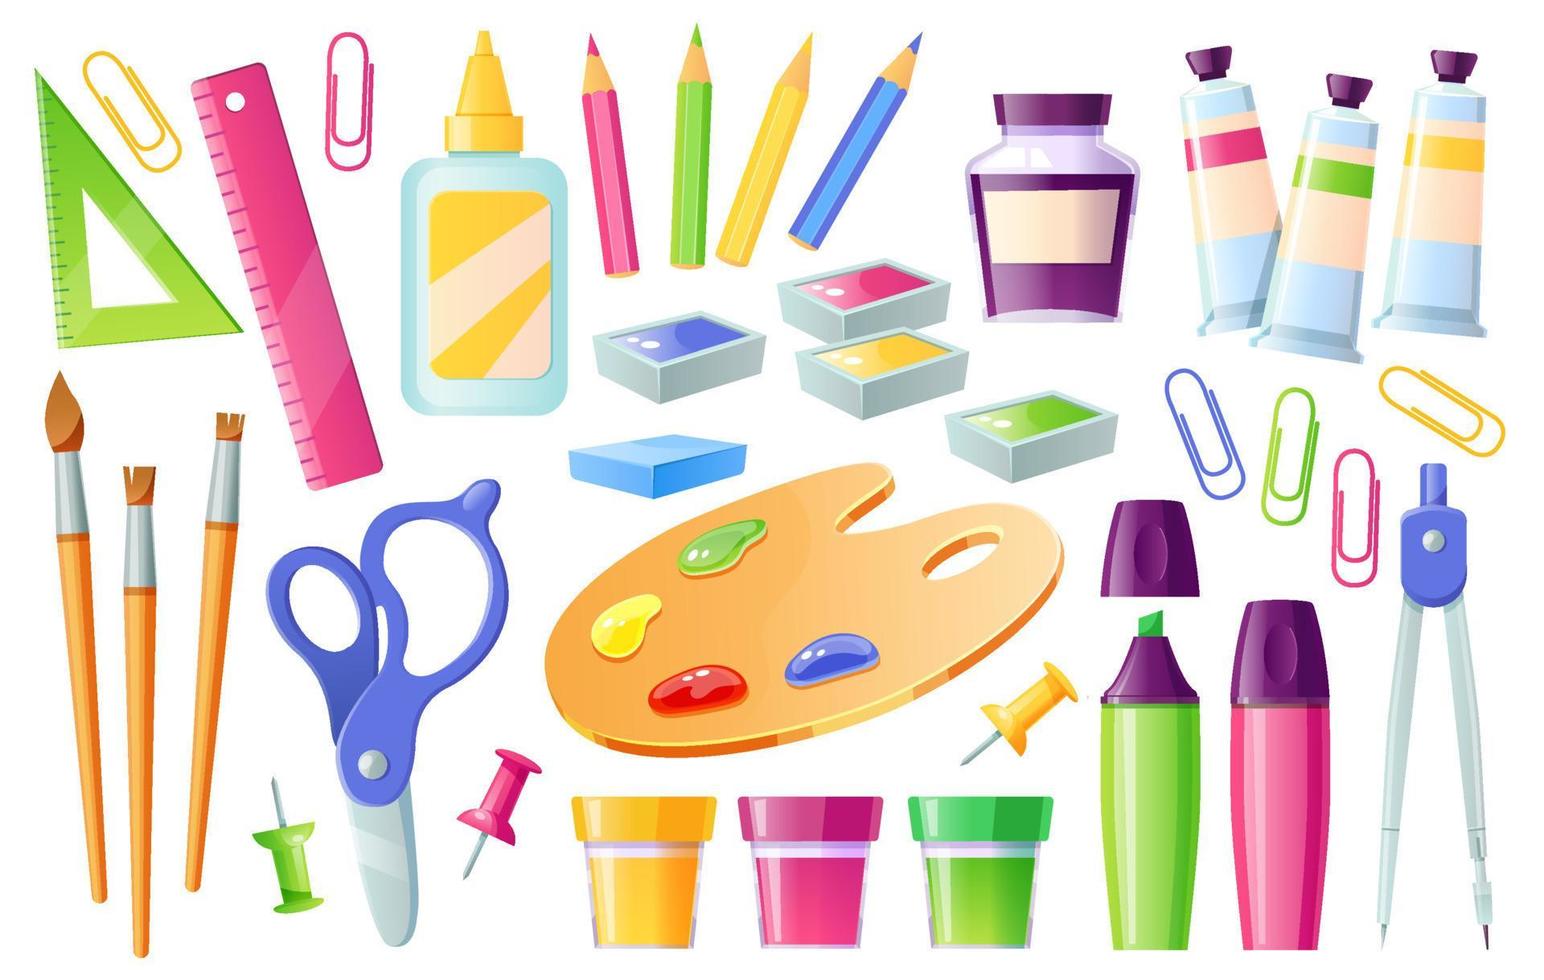 Dibujo utiles escolar  School tool, Art school supplies, School